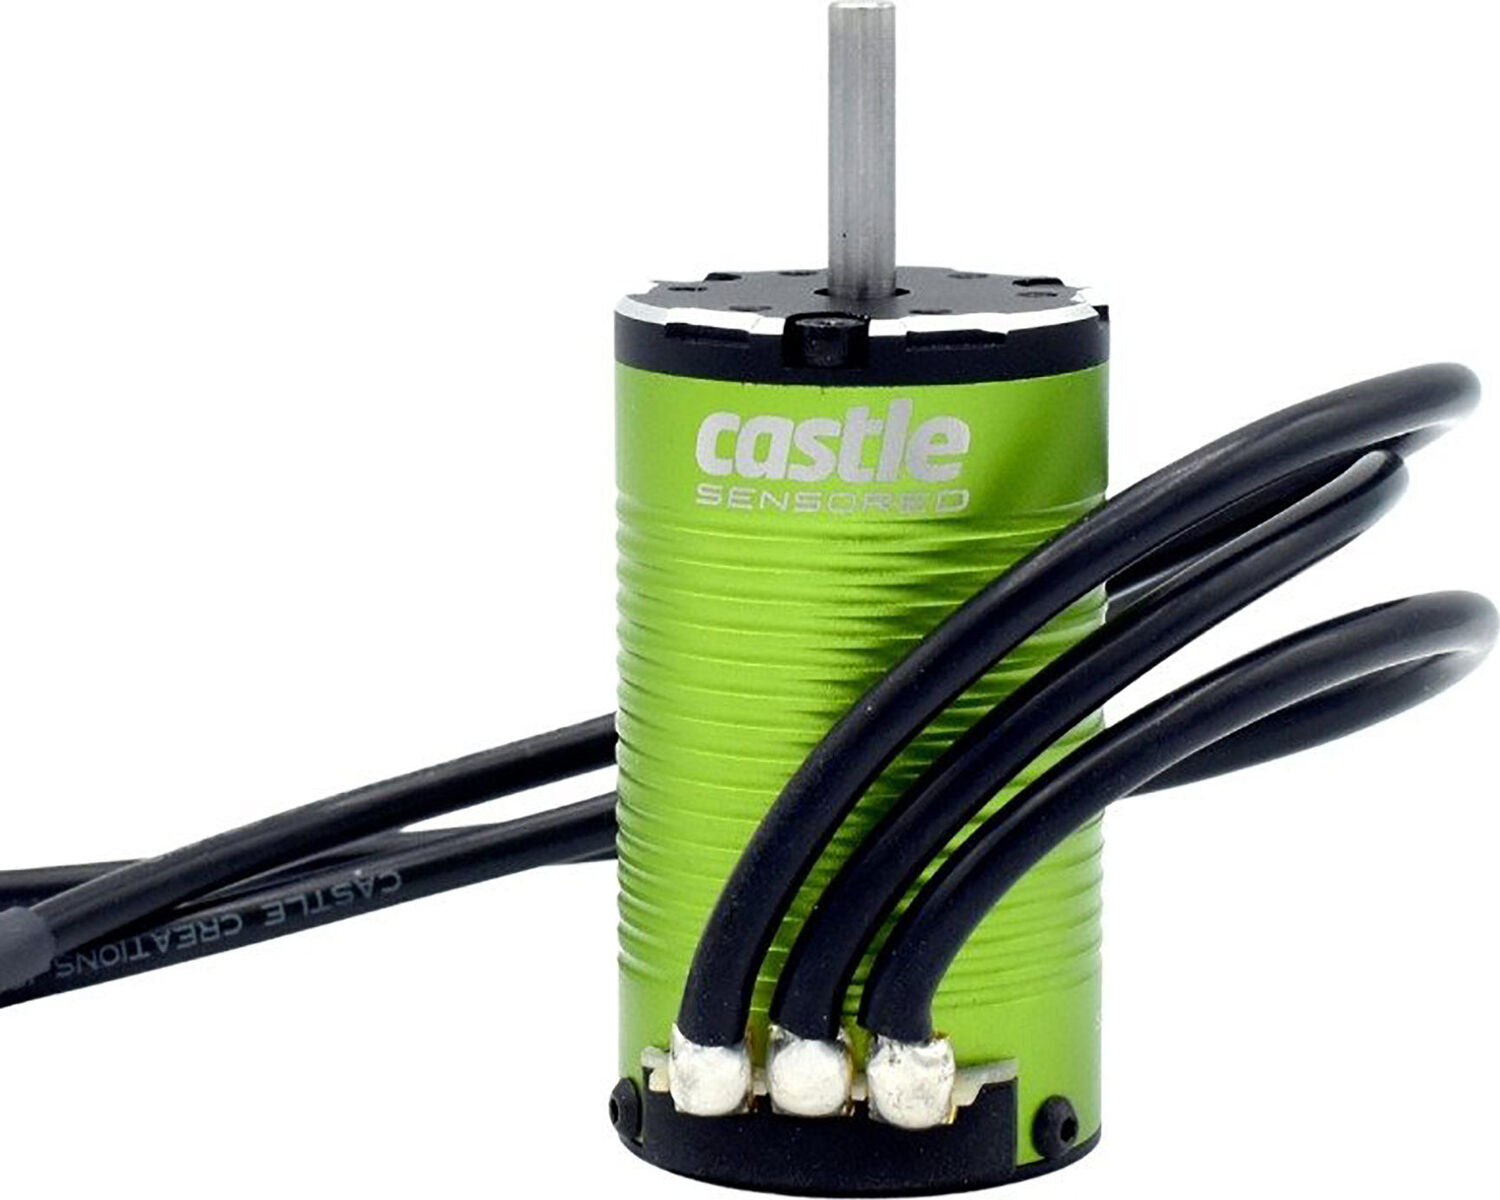 Castle Creations 1412-6400Kv Brushless Sensored Motor